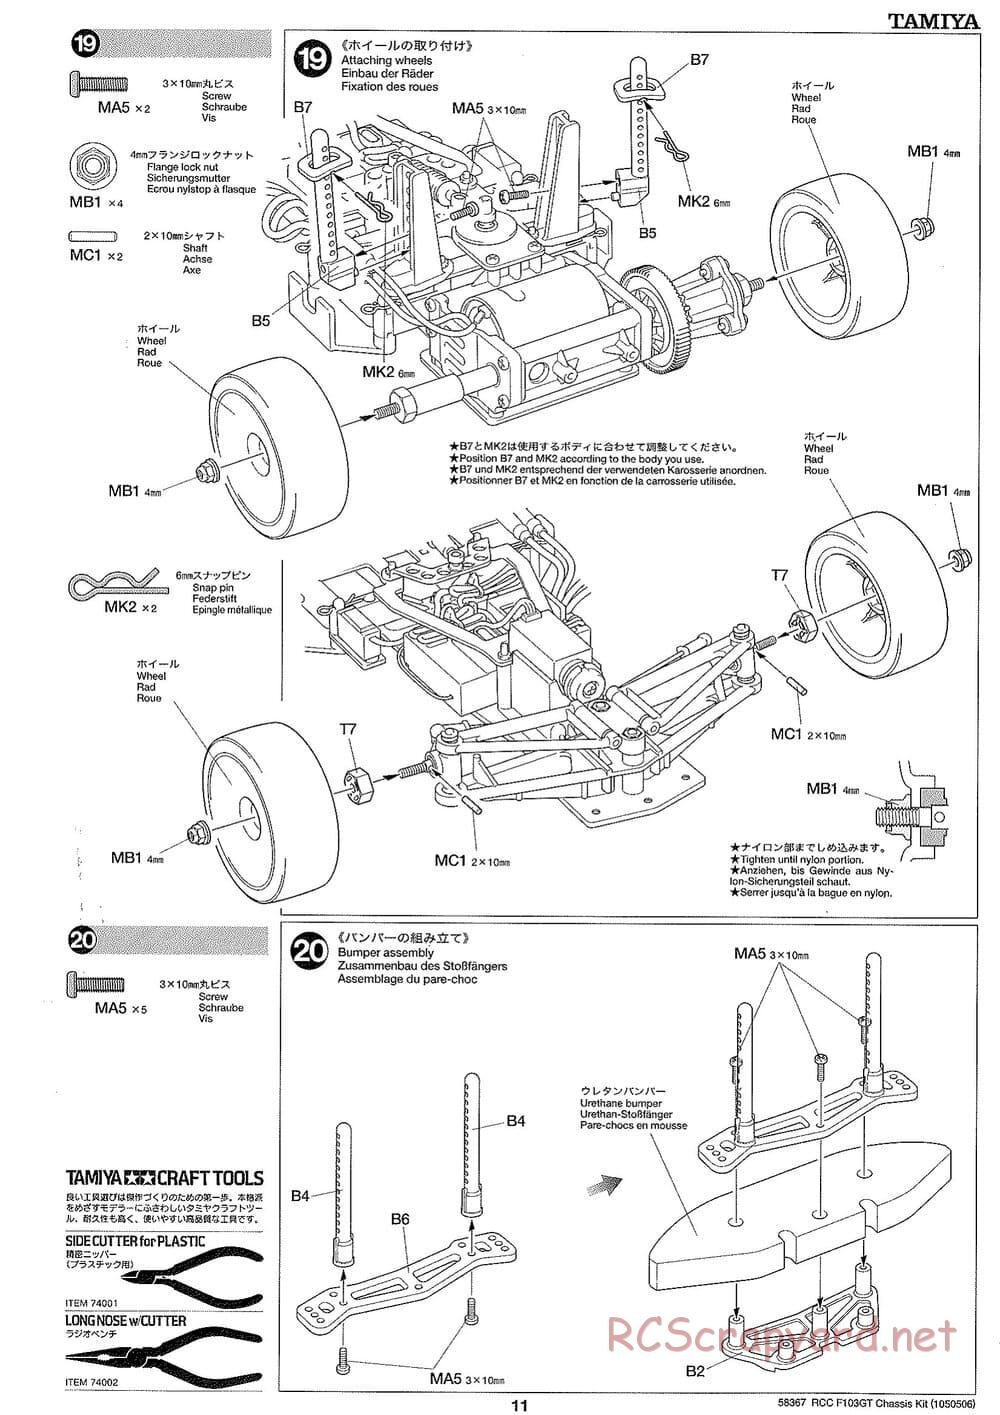 Tamiya - F103GT Chassis Kit - Manual - Page 11